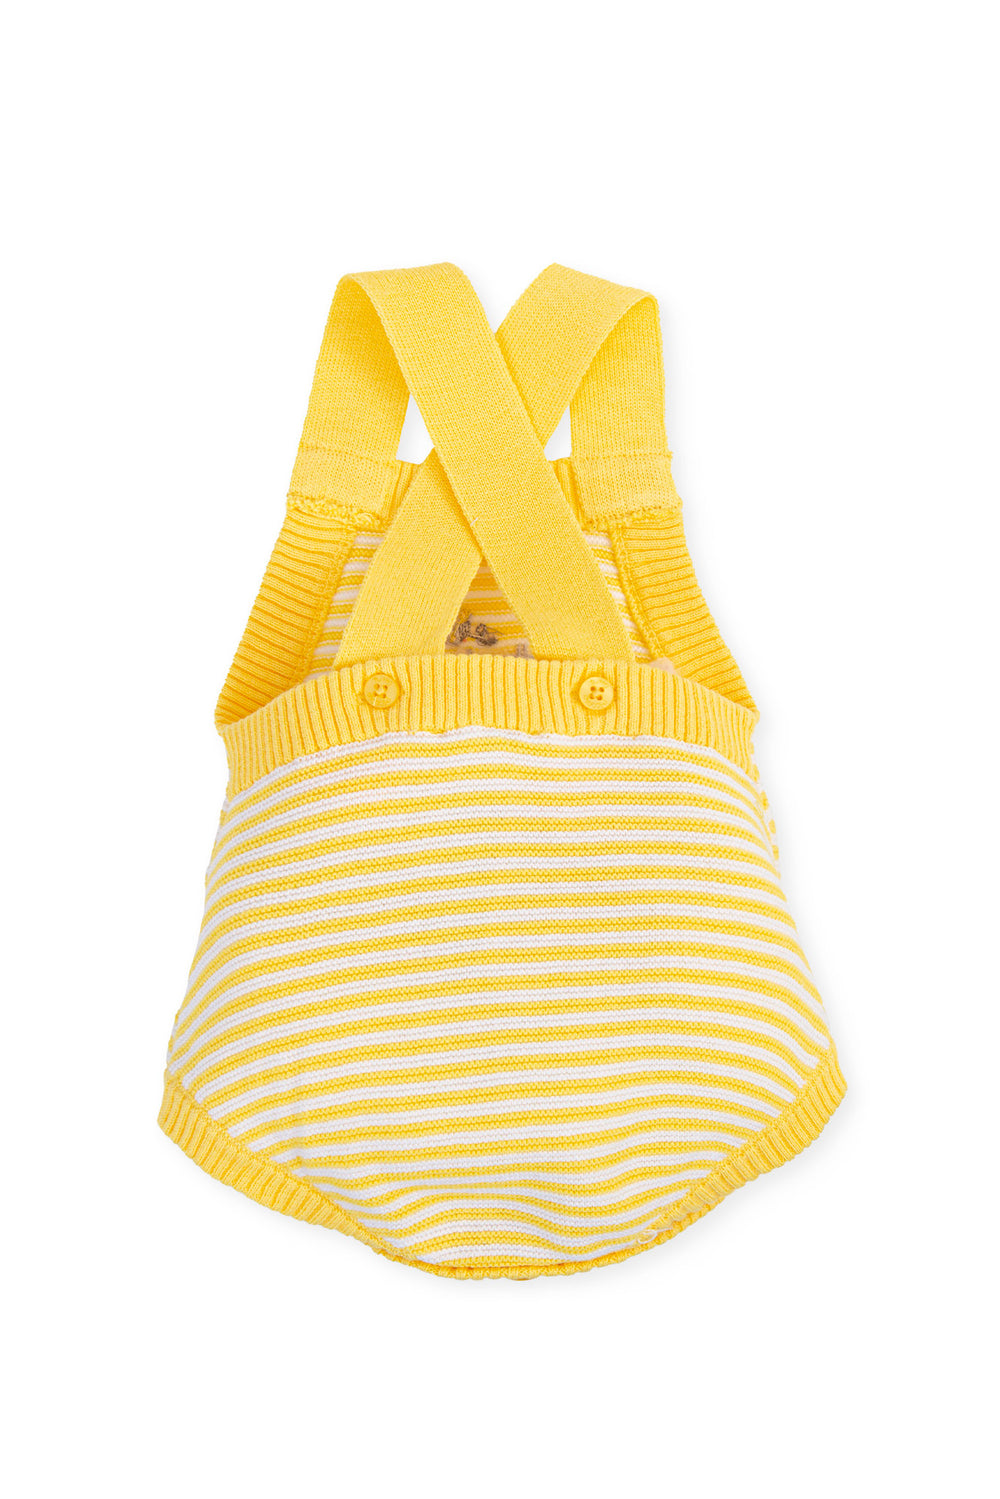 Tutto Piccolo "Ari" Yellow Striped Knit Romper | Millie and John